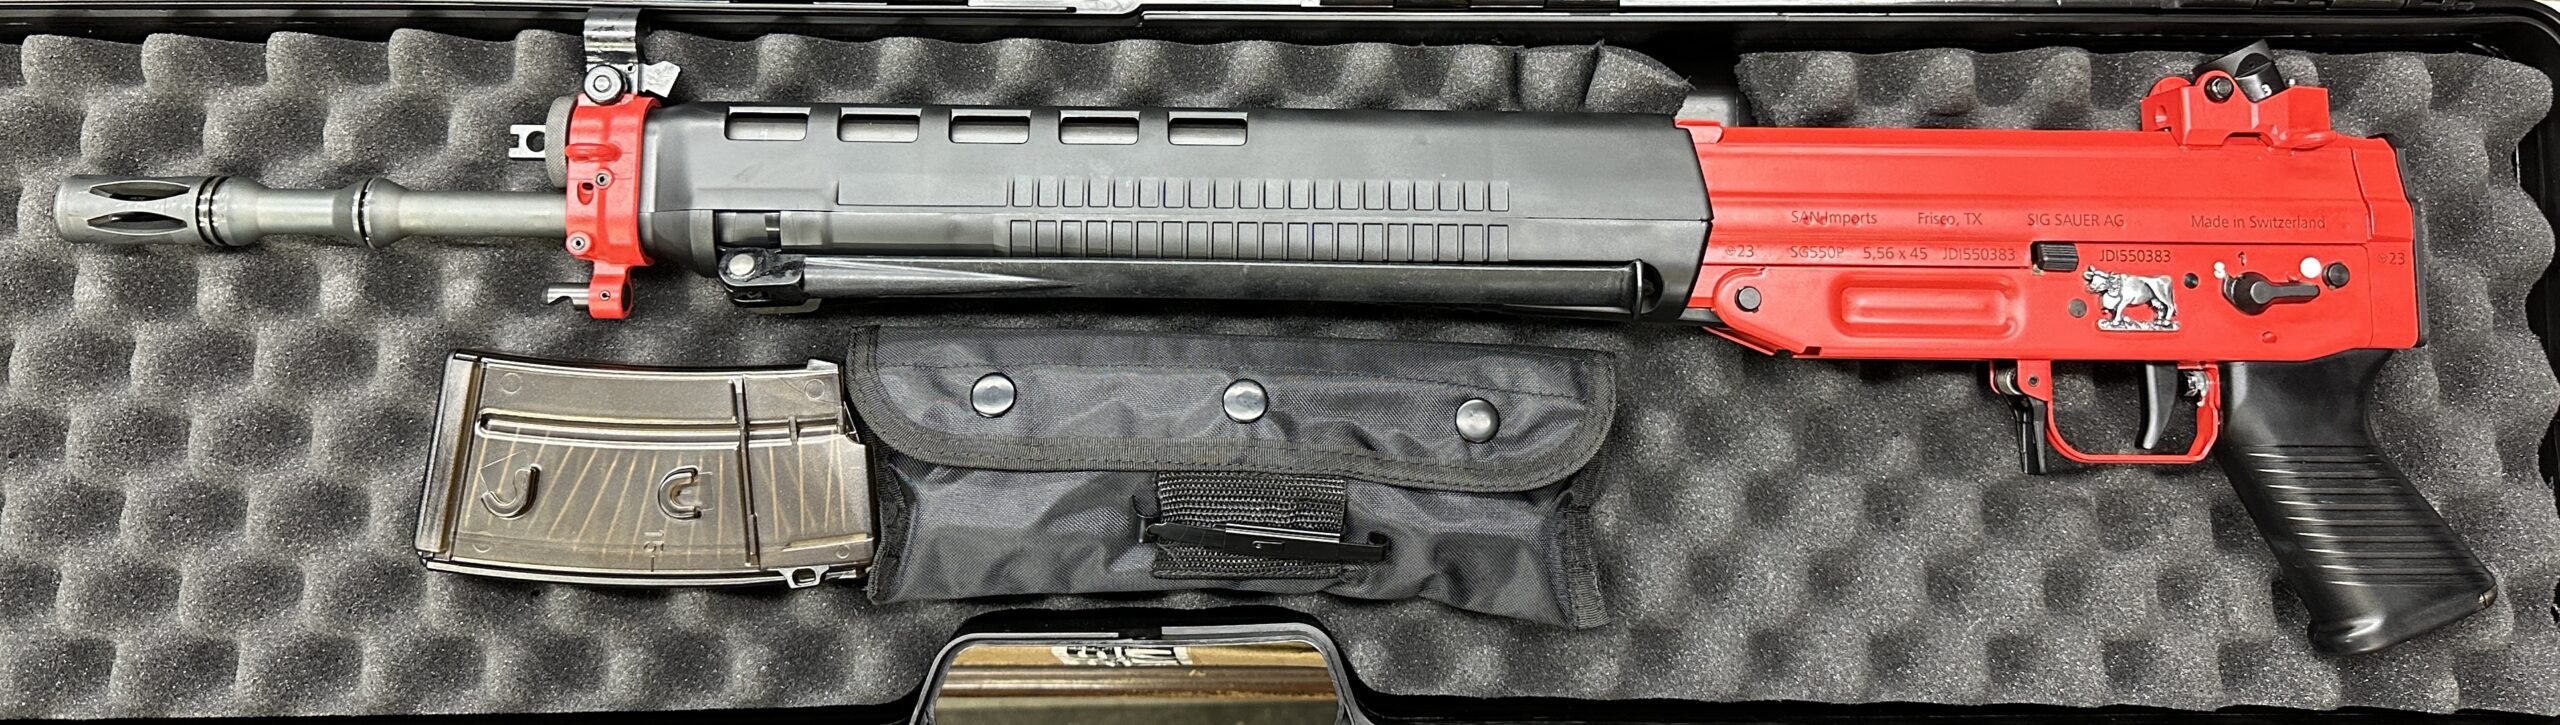 JDI 550/PE90 Firearms, – Edelweiss